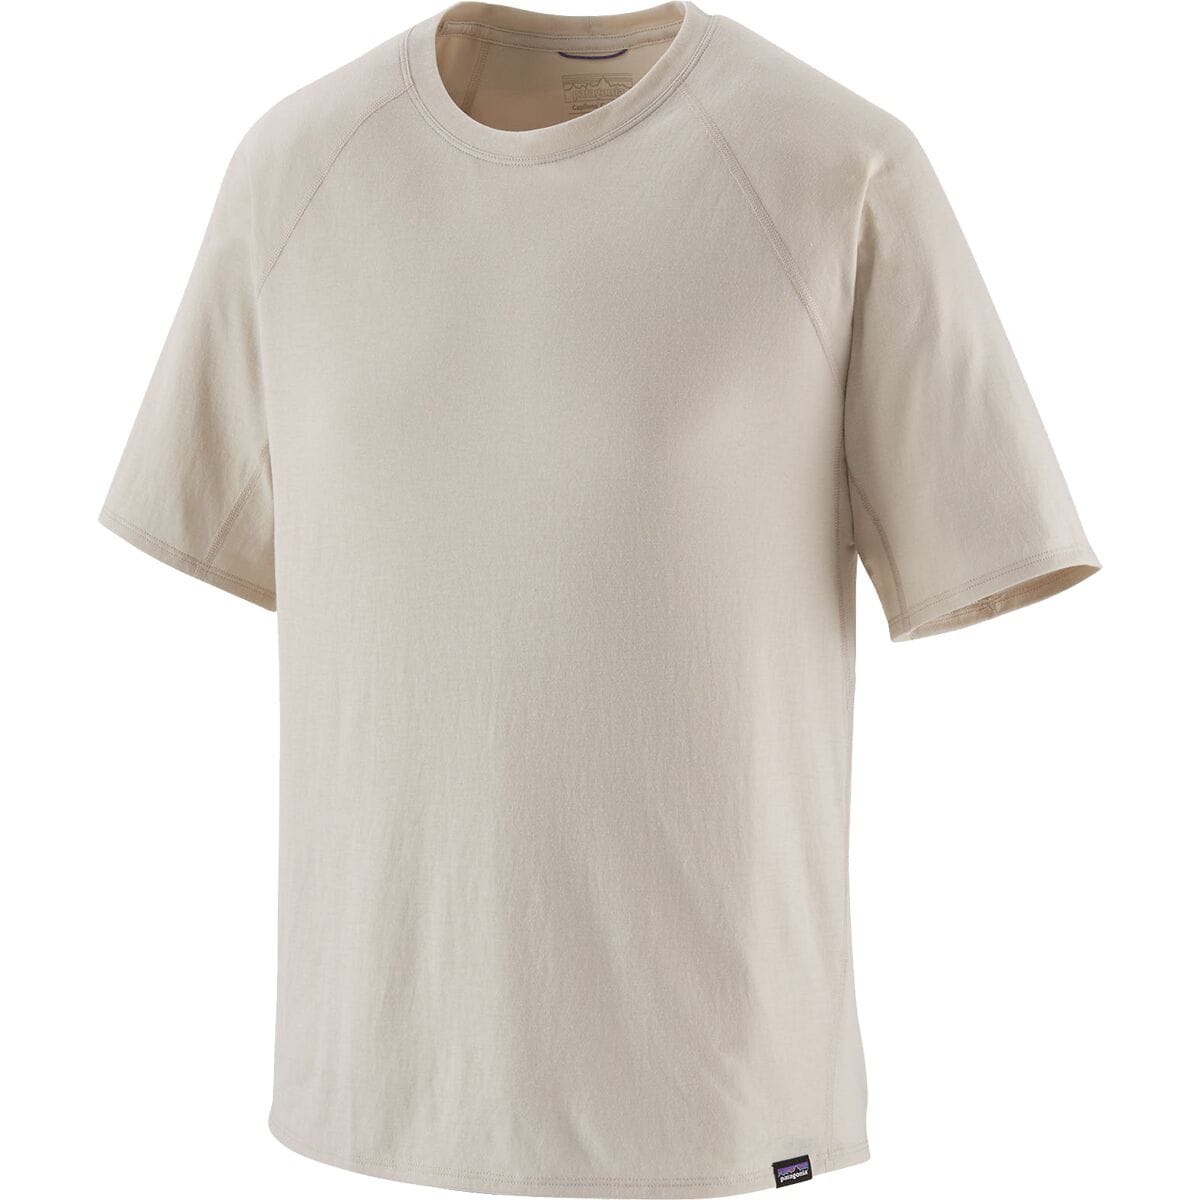 Capilene Cool Trail Short-Sleeve Shirt - Men